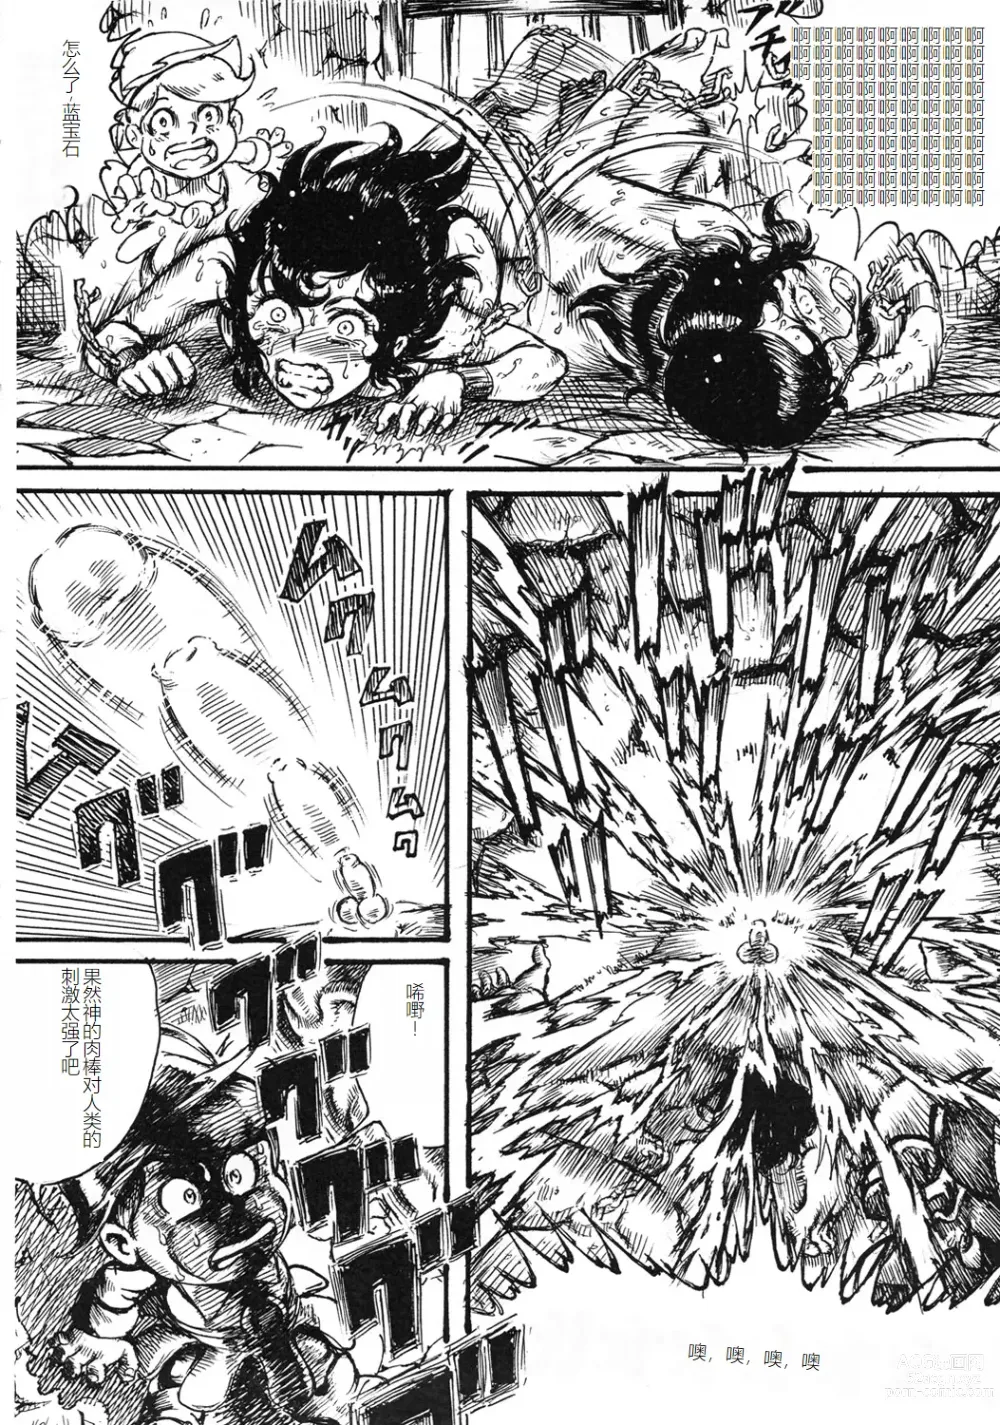 Page 45 of doujinshi Youjinbou Otaku Matsuri 8